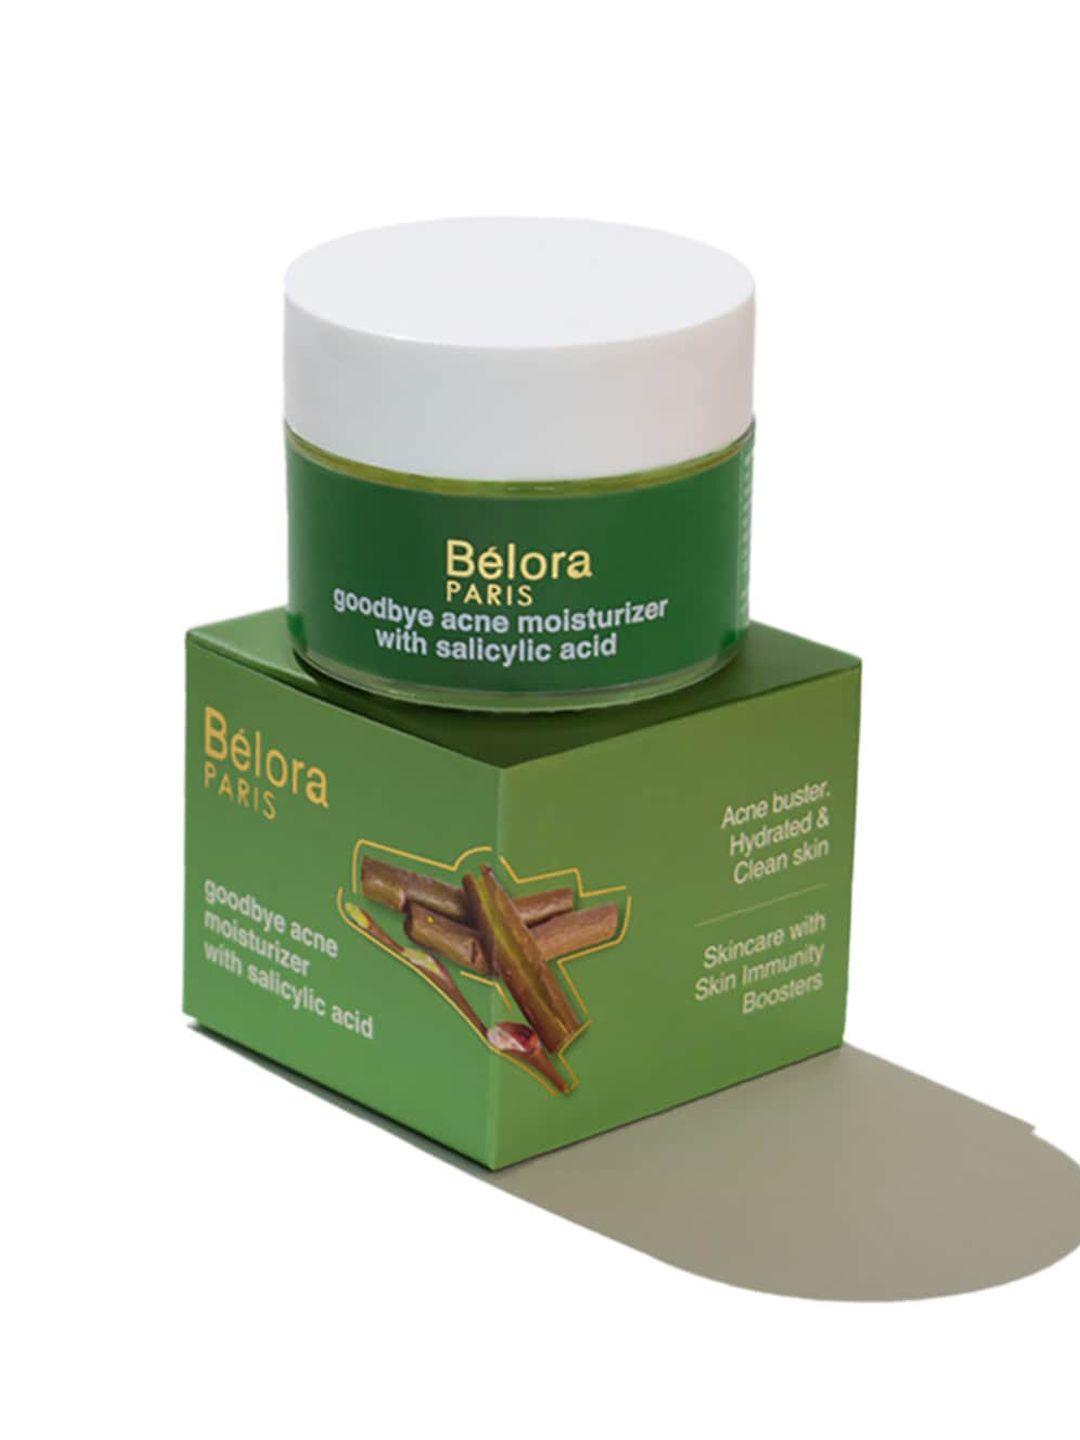 belora paris goodbye acne moisturizer with salicylic acid & glycolic acid - 50ml